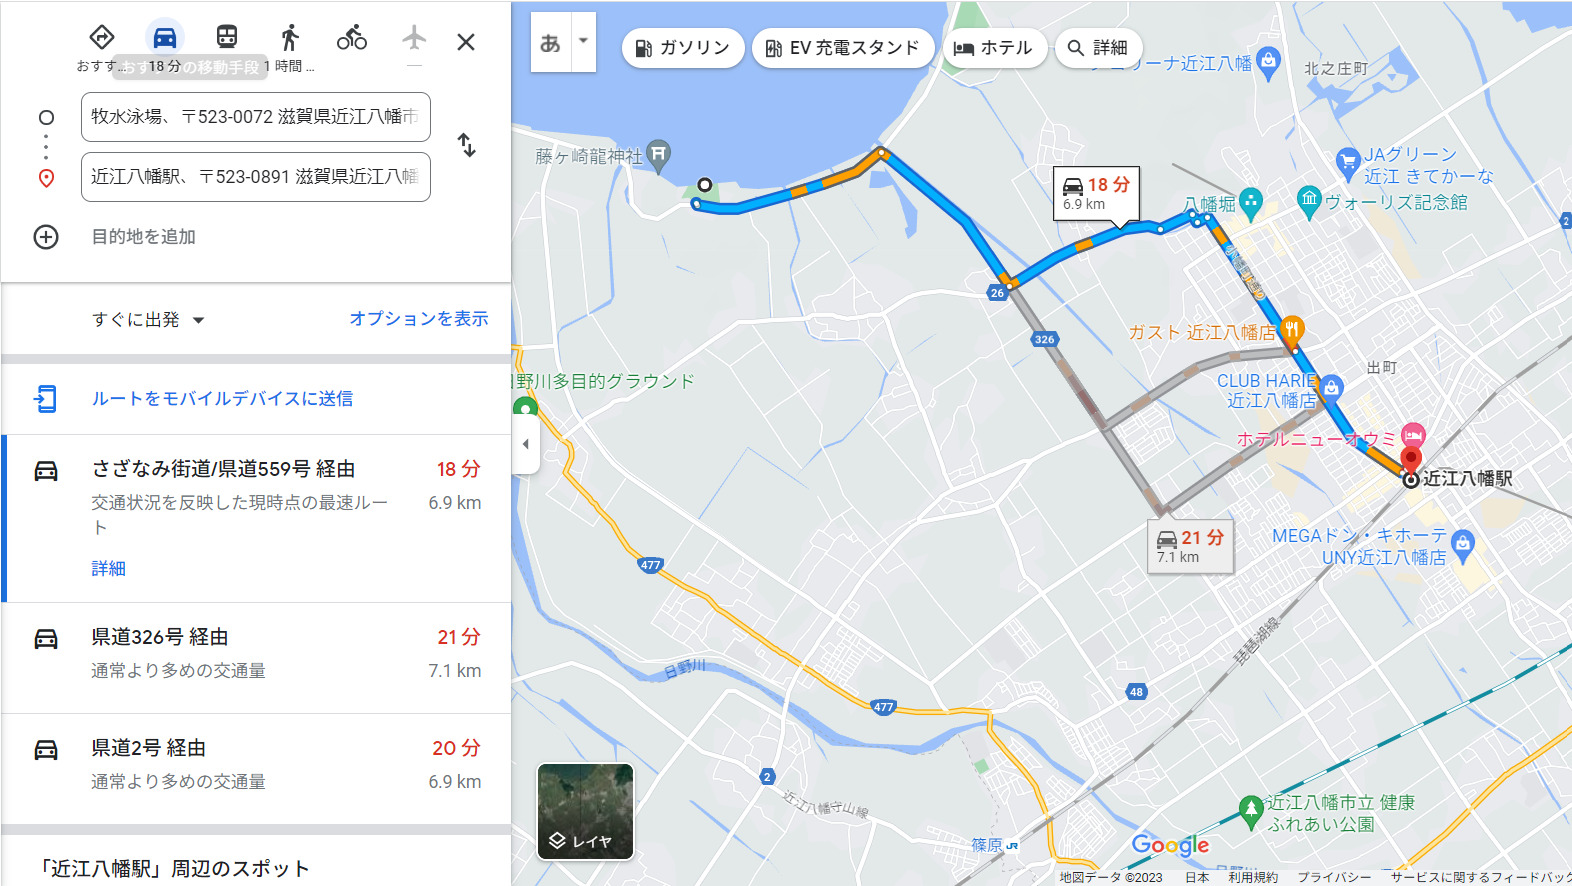 通勤距離のしらべ方 GoogleMapならルート変更もできますよ